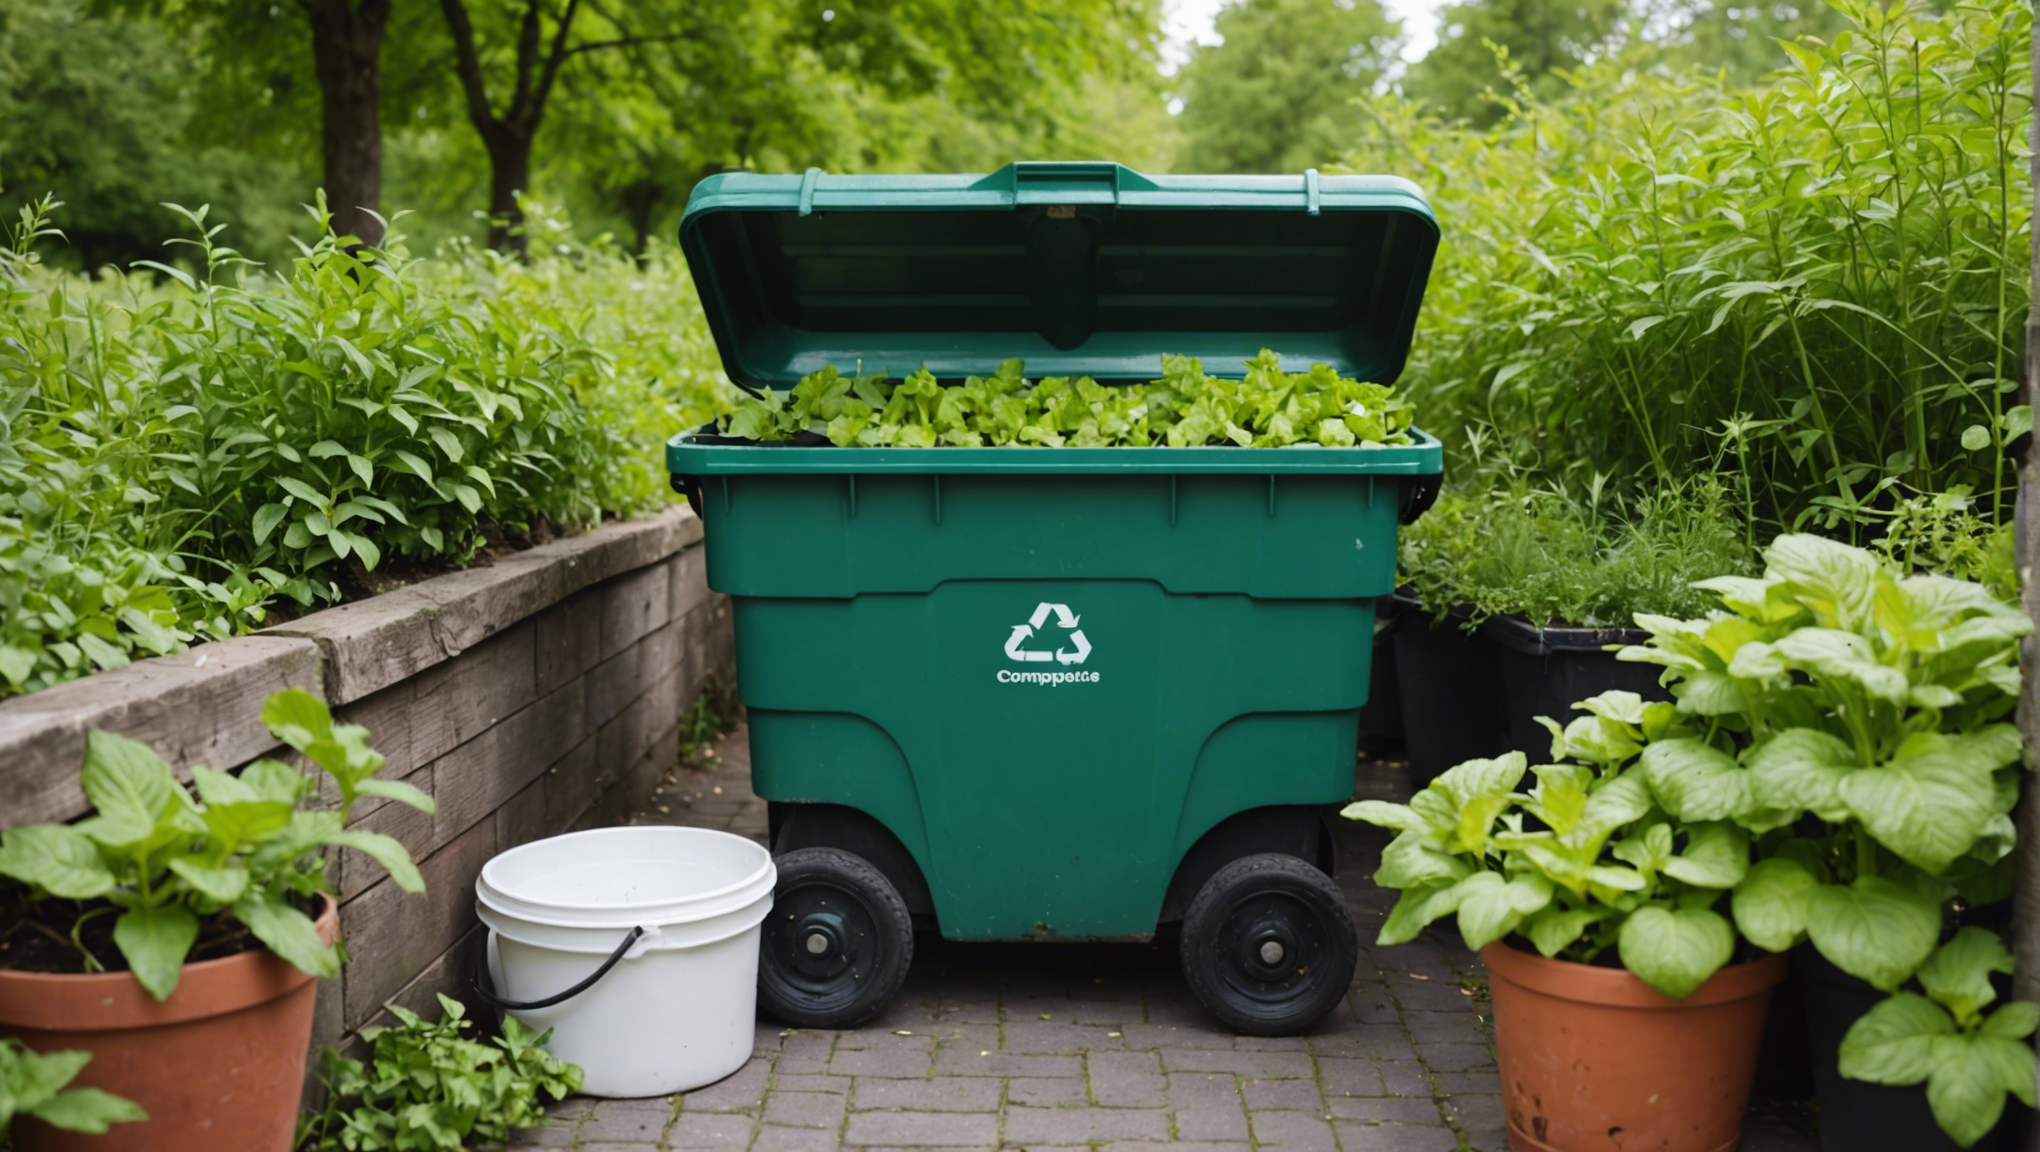 découvrez comment réussir le compostage domestique en 5 étapes simples pour réduire vos déchets et enrichir votre terreau naturellement.